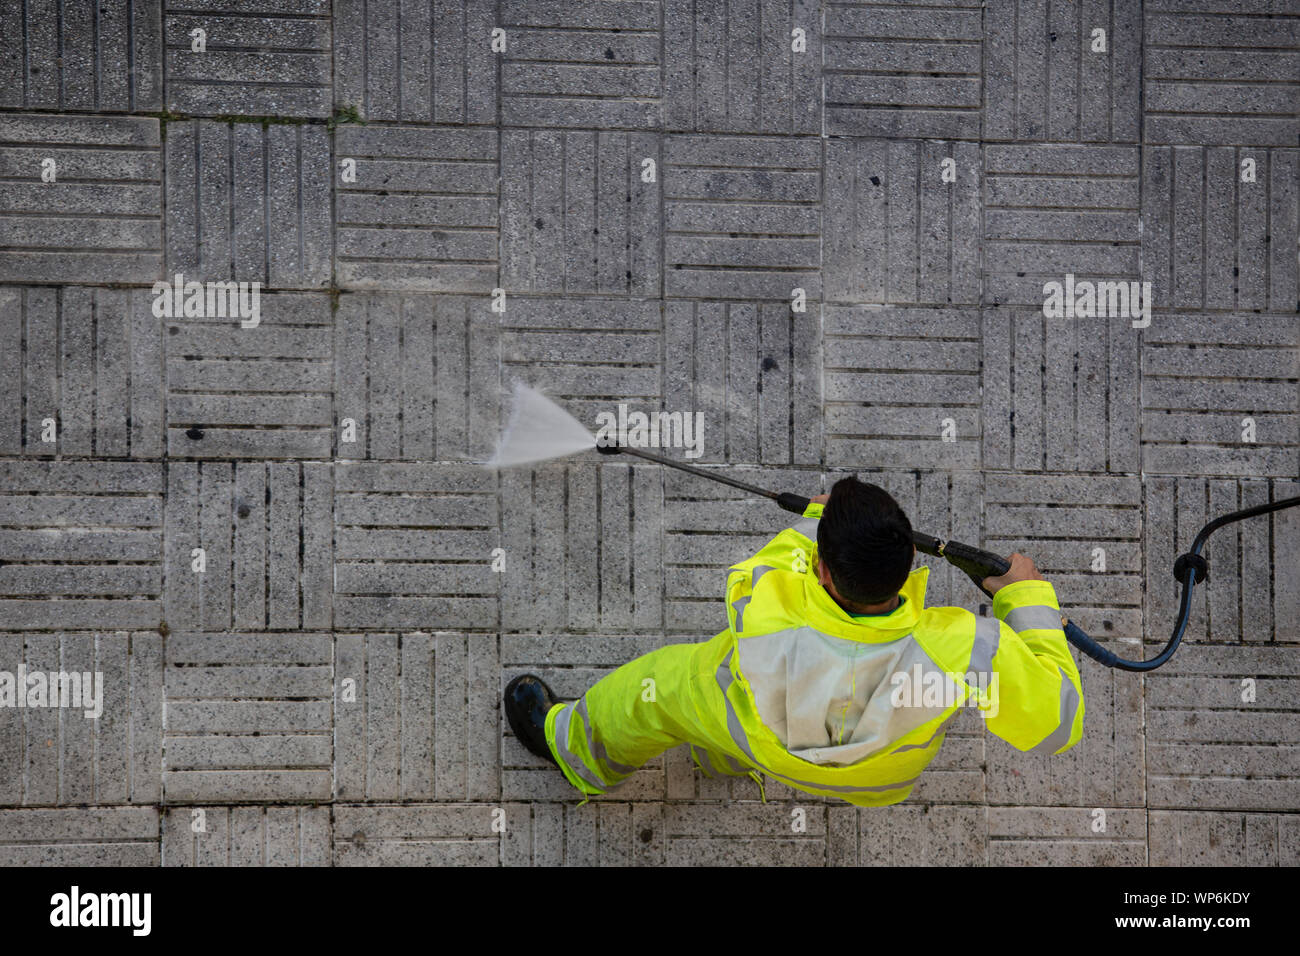 Vista superior de un trabajador de la limpieza de la acera de la calle con el chorro de agua de alta presión. Concepto de mantenimiento público Foto de stock